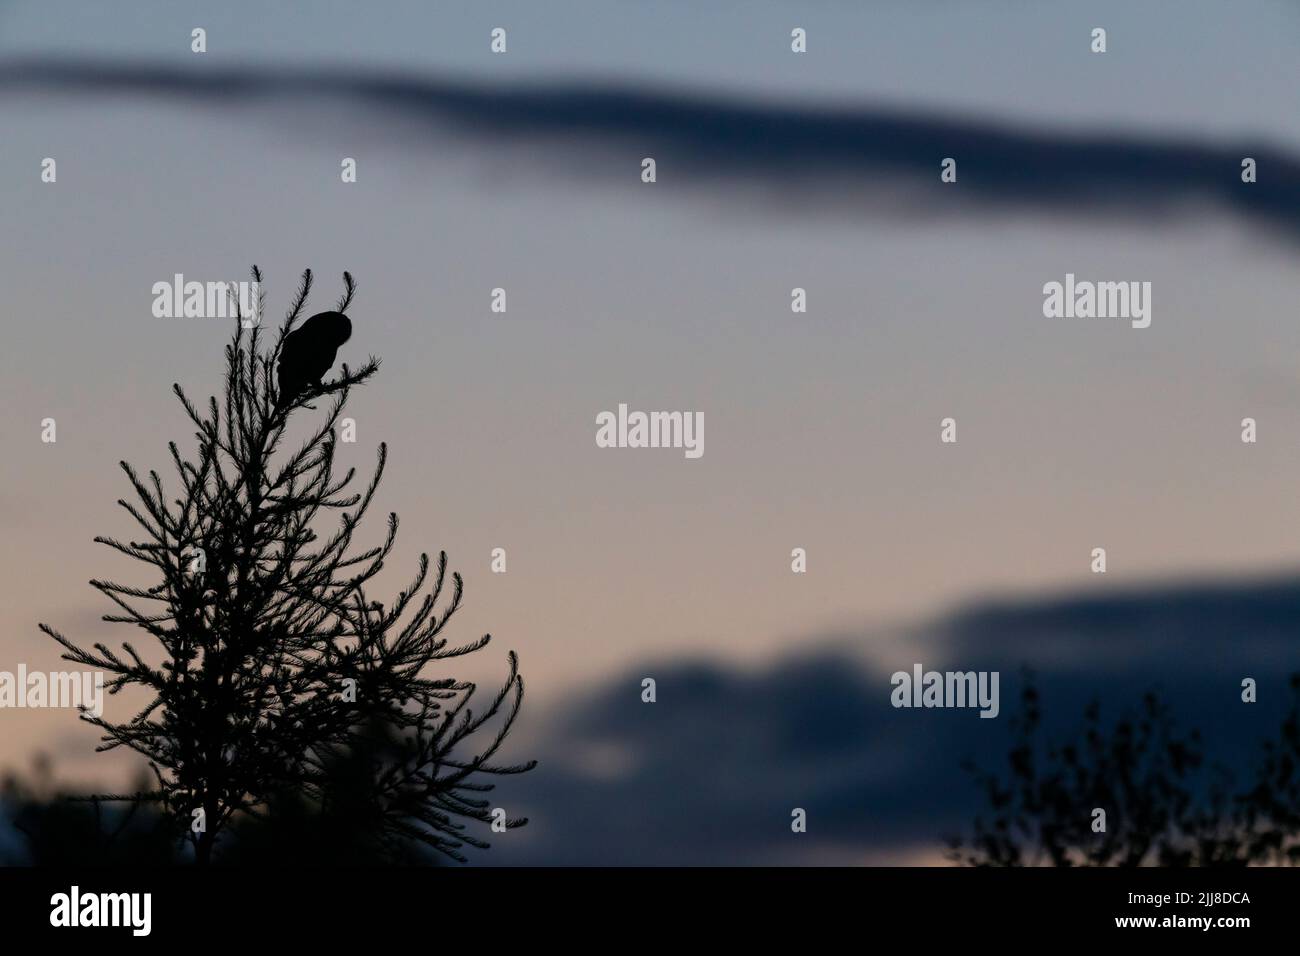 Hibou de Tawny Strix aluco, adulte perchée dans un conifères au crépuscule, Crabtree Hill, Forest of Dean, Gloucestershire, Royaume-Uni, Juillet Banque D'Images